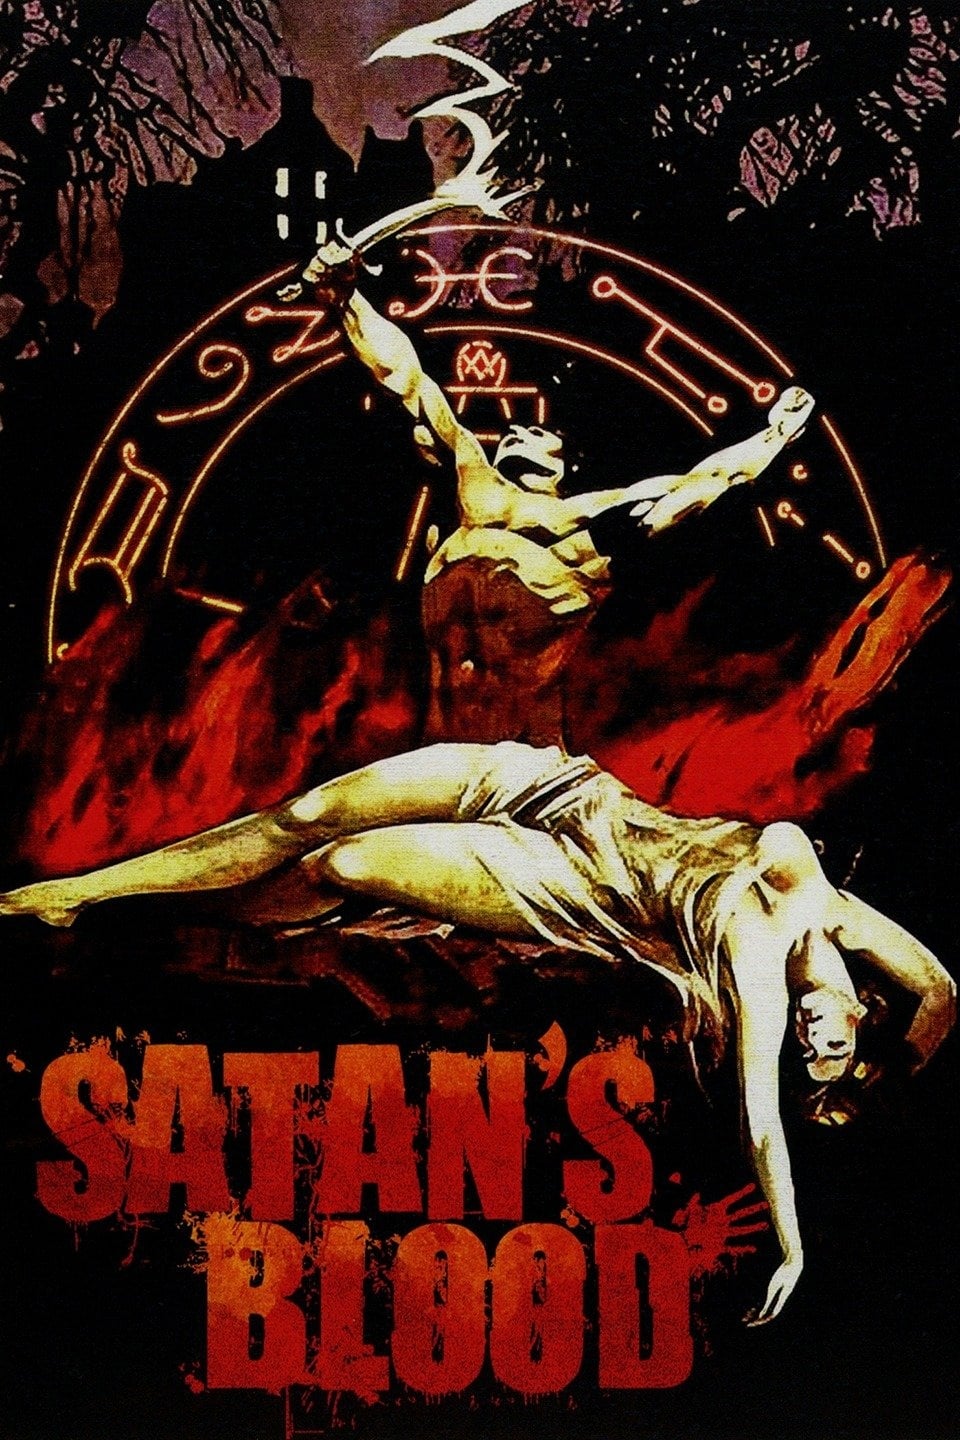 Satan's Blood streaming